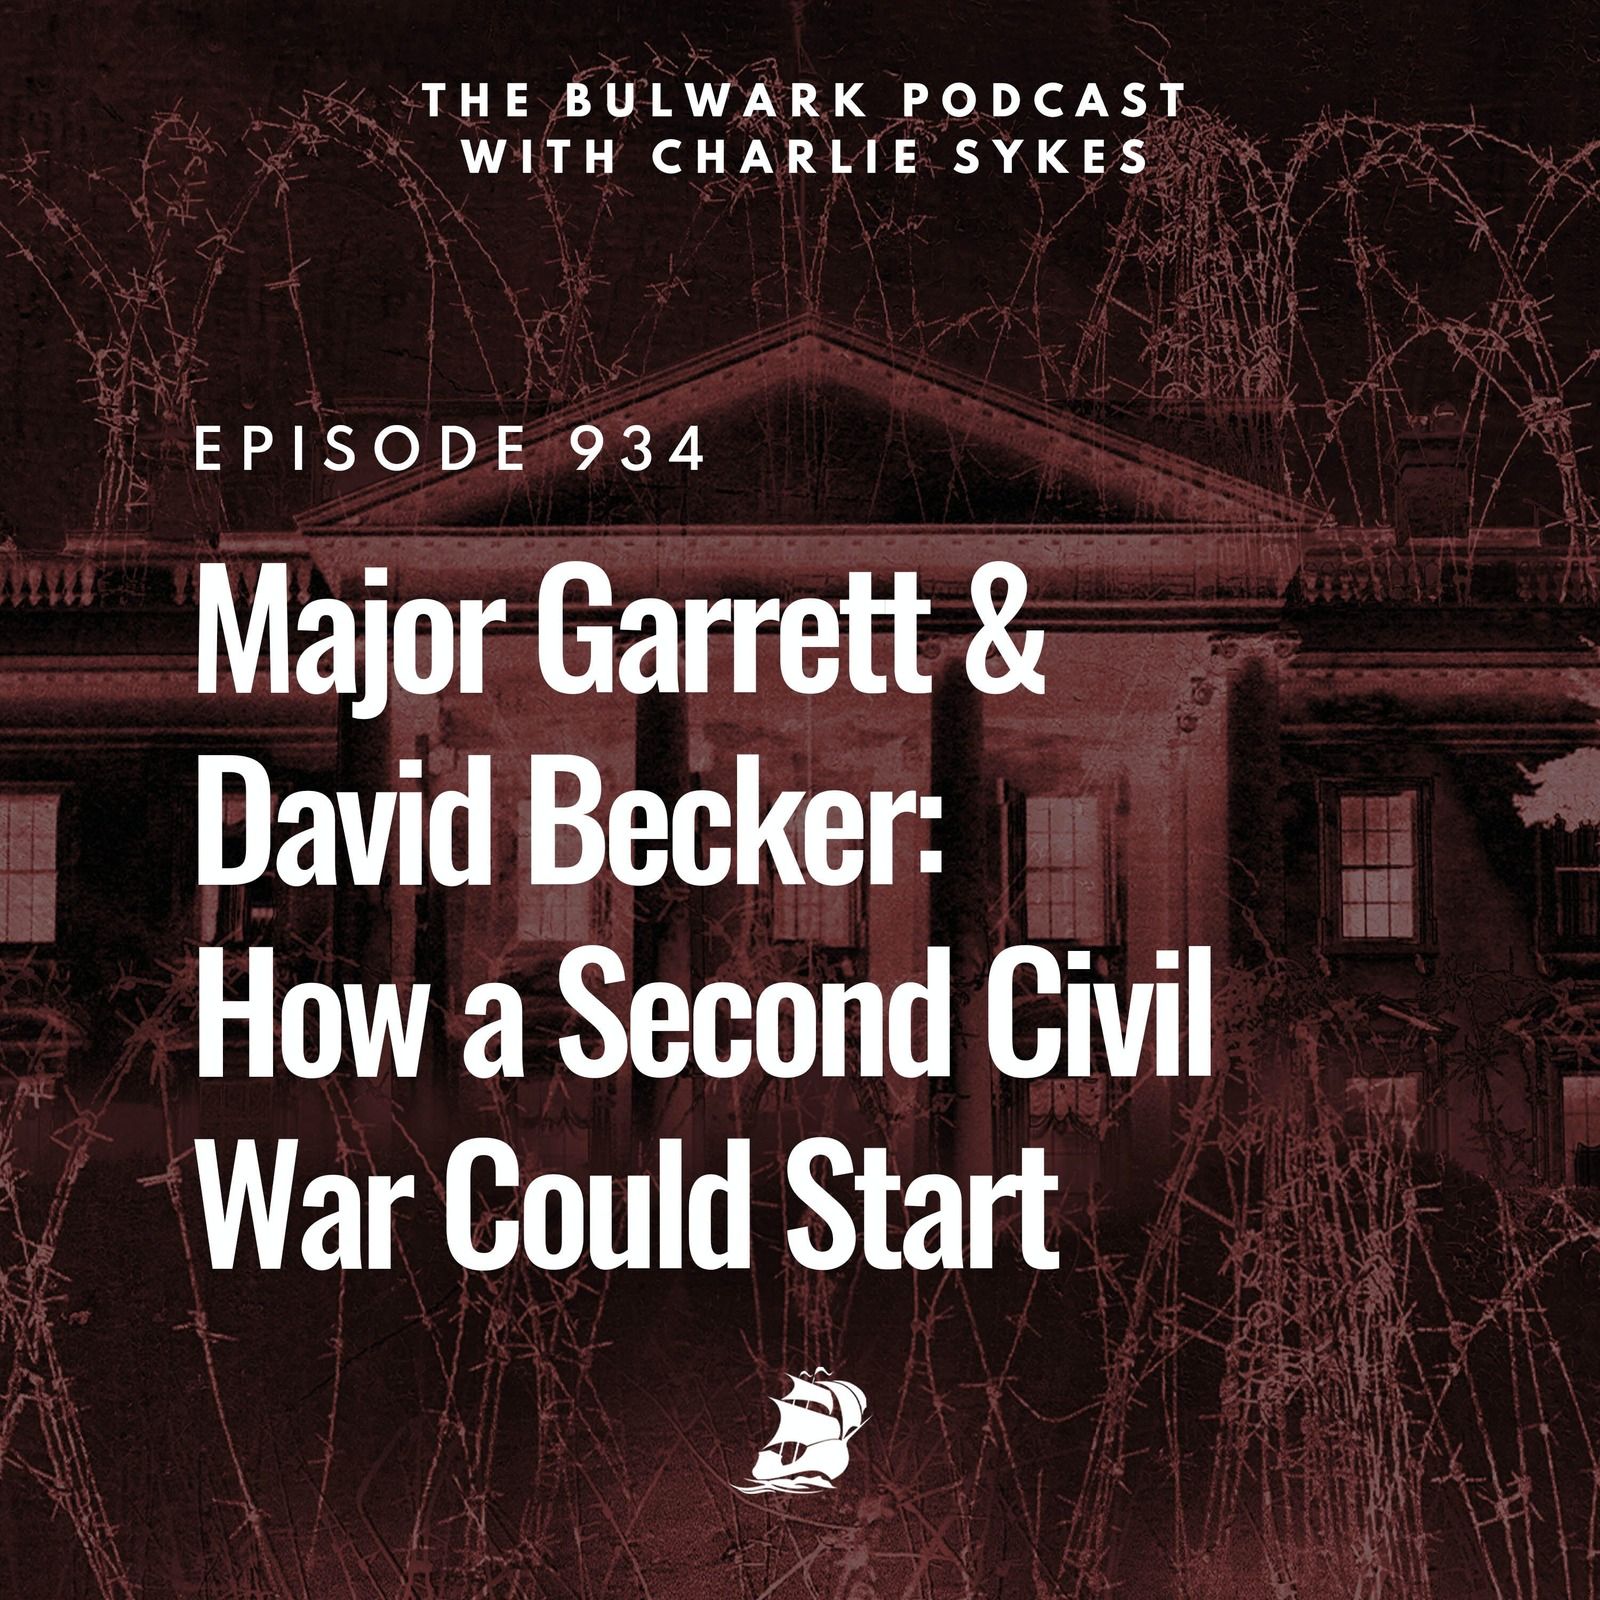 Major Garrett & David Becker: How a Second Civil War Could Start by The Bulwark Podcast